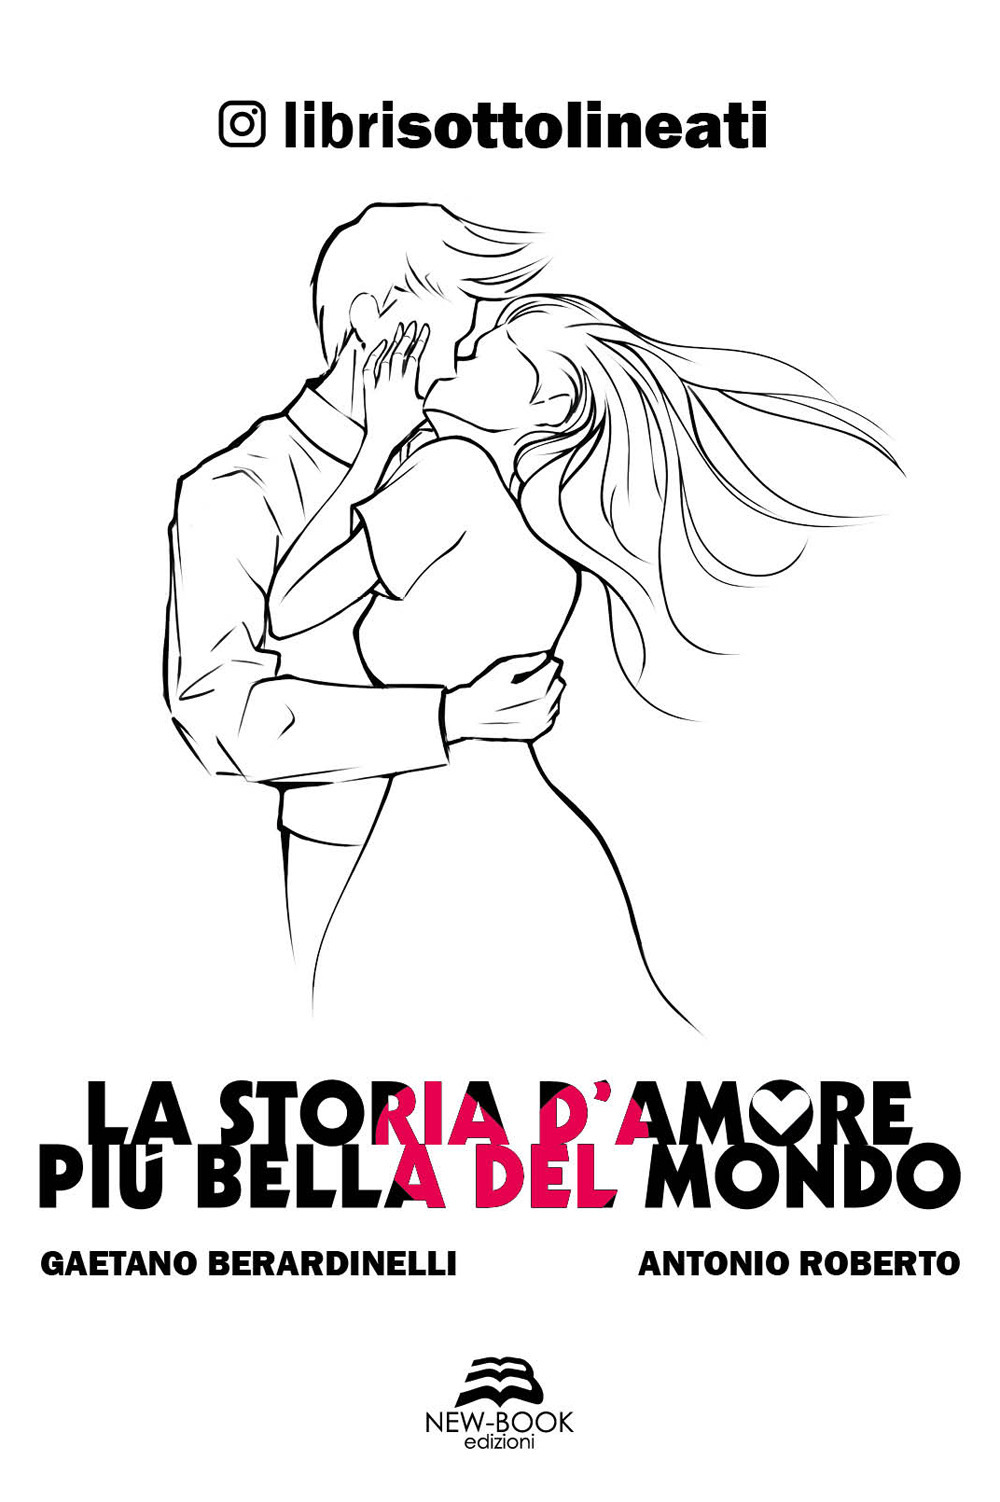 Libri Berardinelli Gaetano / Antonio Roberto / Librisottolineati - La Storia D'amore Piu Bella Del Mondo NUOVO SIGILLATO, EDIZIONE DEL 04/12/2020 SUBITO DISPONIBILE